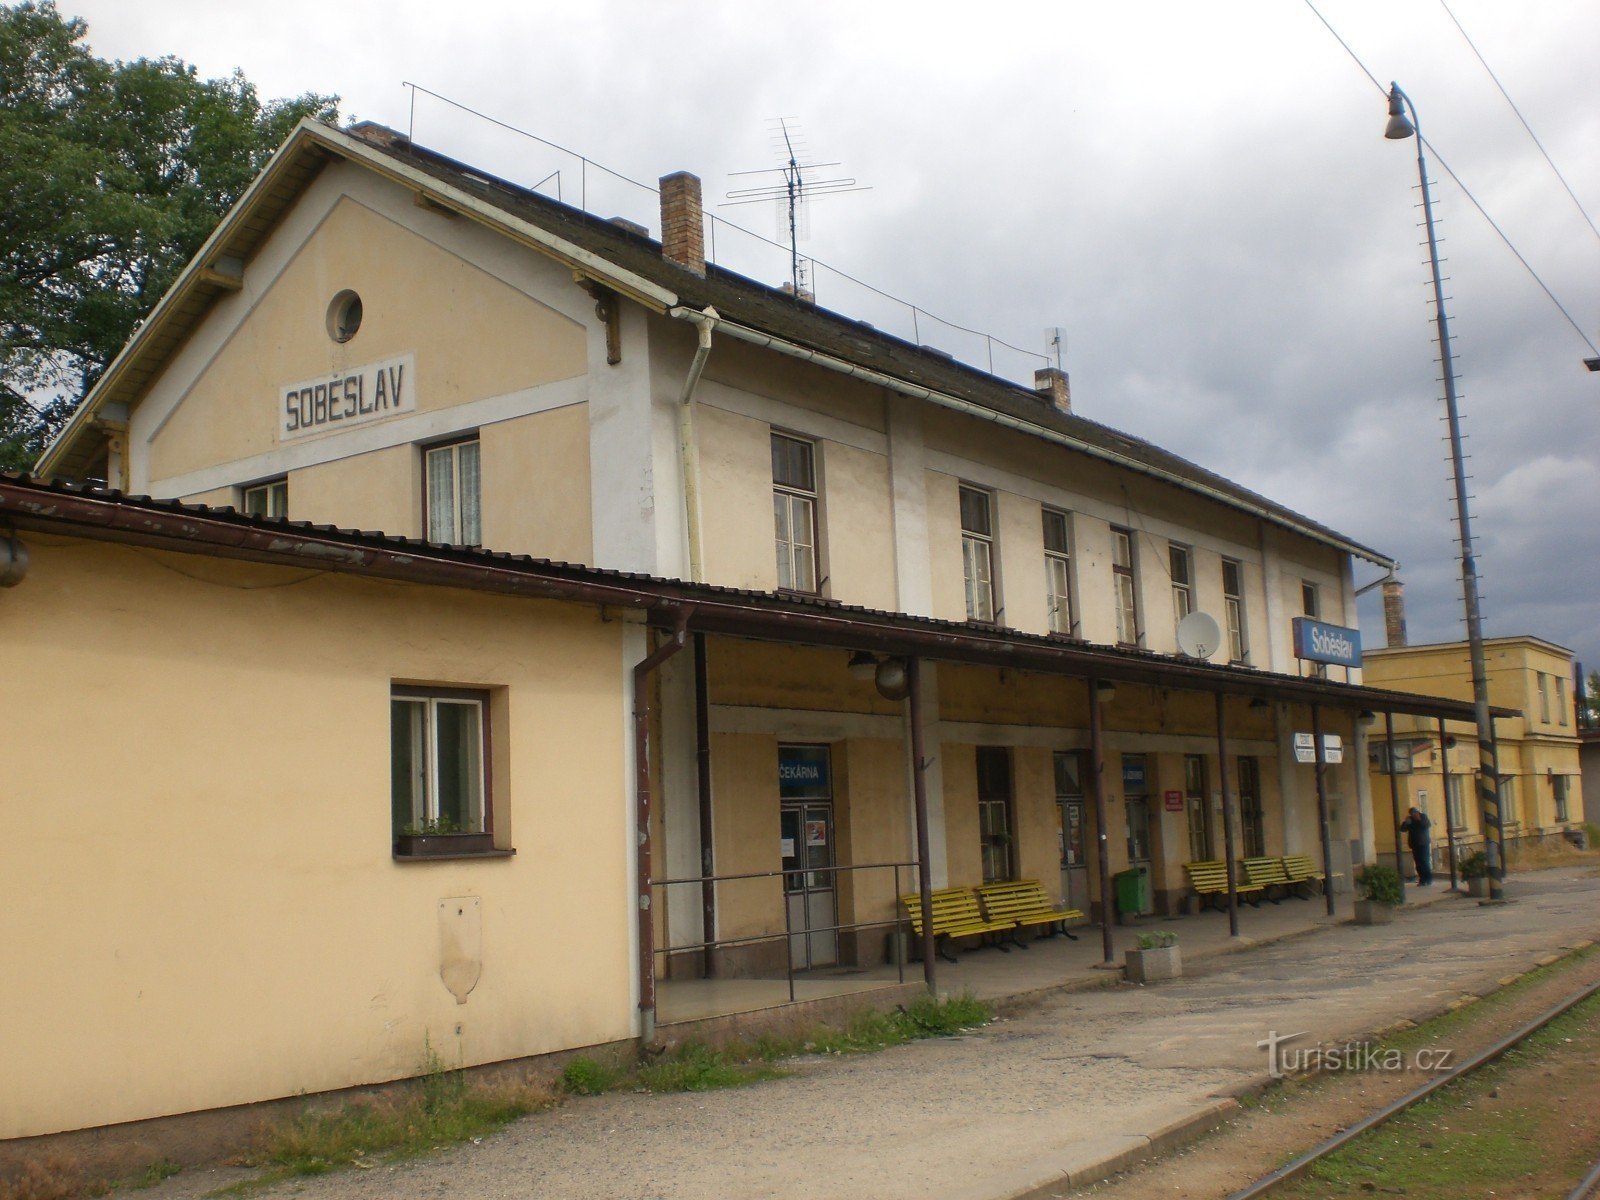 Soběslav - ga đường sắt